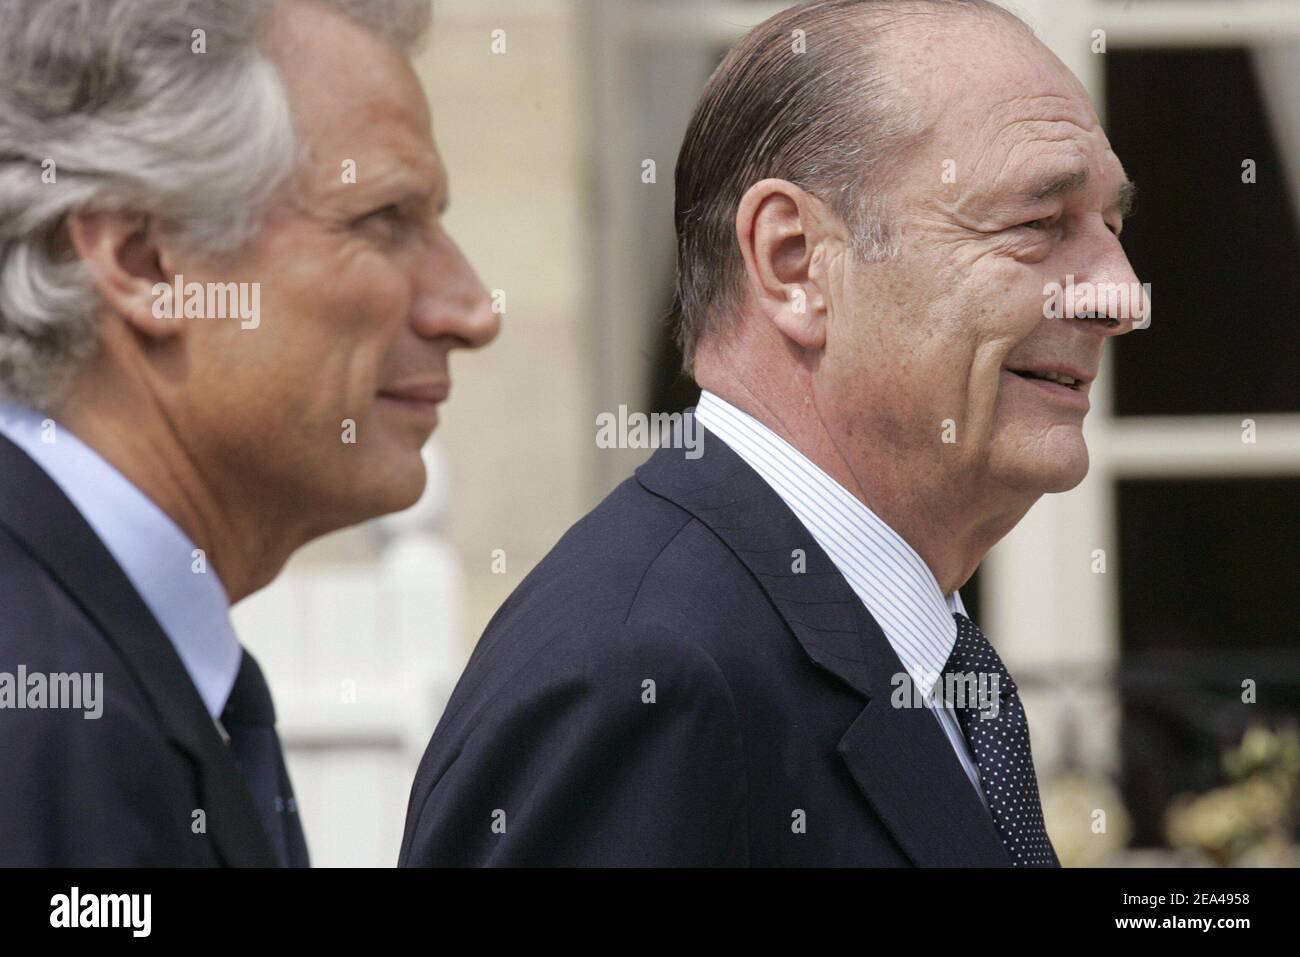 Le président français Jacques Chirac et le nouveau Premier ministre Dominique de Villepin (L) à l'Elysée Palace de Paris, le vendredi 3 juin 2005, au début de la première réunion du Cabinet du nouveau gouvernement dirigé par le Premier ministre Dominique de Villepin. Photo de Mousse-Klein/ABACA Banque D'Images